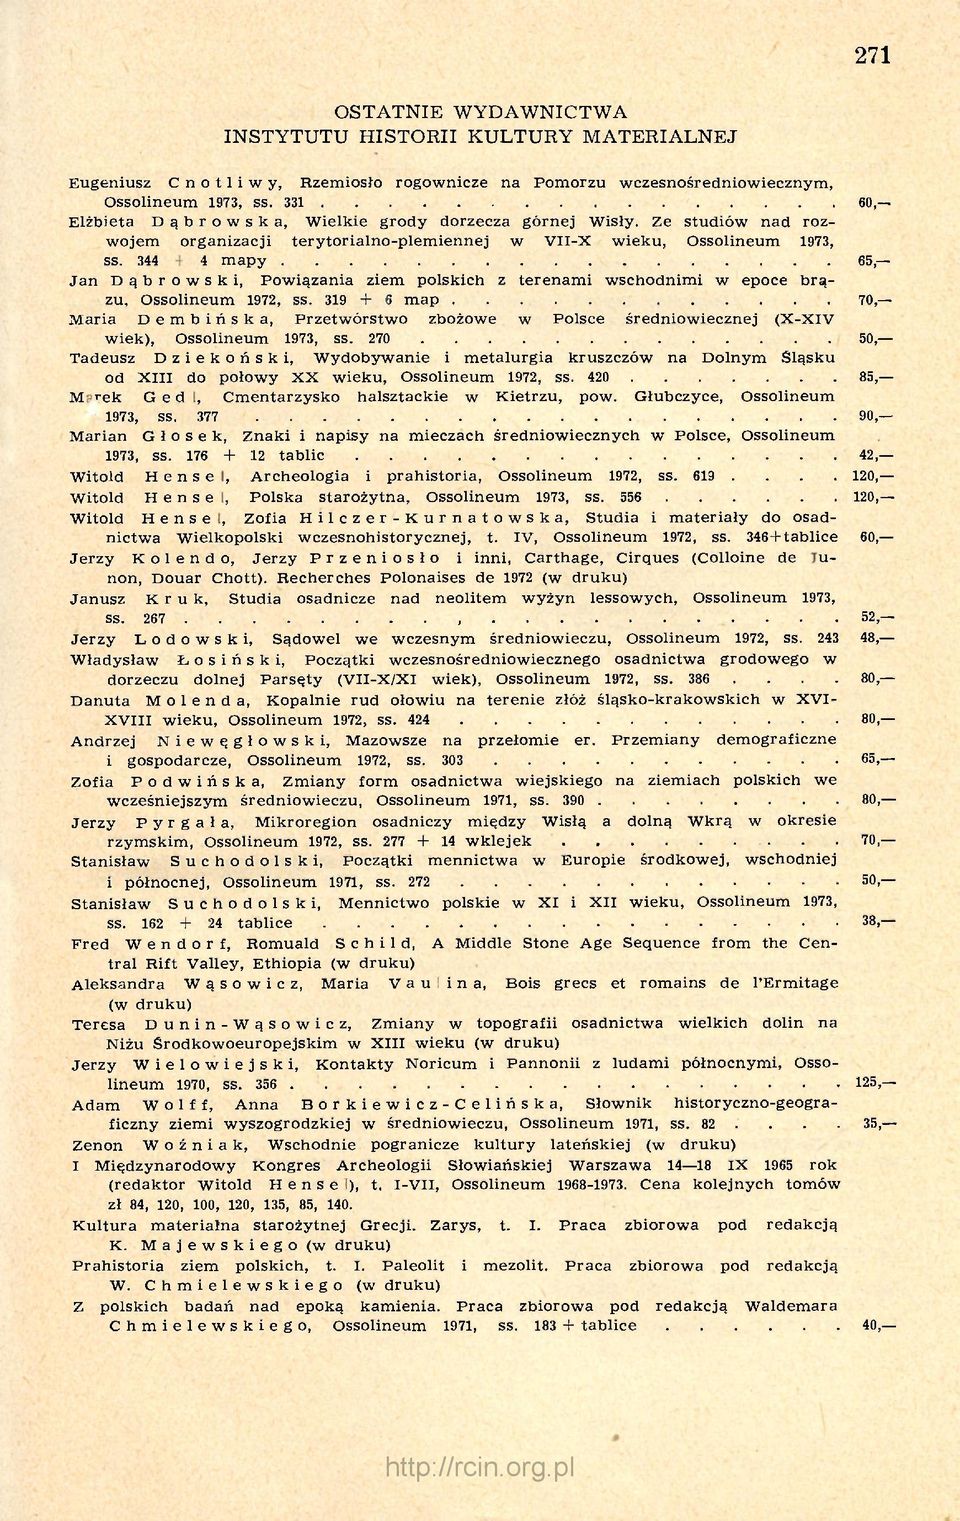 344 + 4 mapy 65, Jan Dąbrowski, Powiązania ziem polskich z terenami wschodnimi w epoce brązu, Ossolineum 1972, ss.